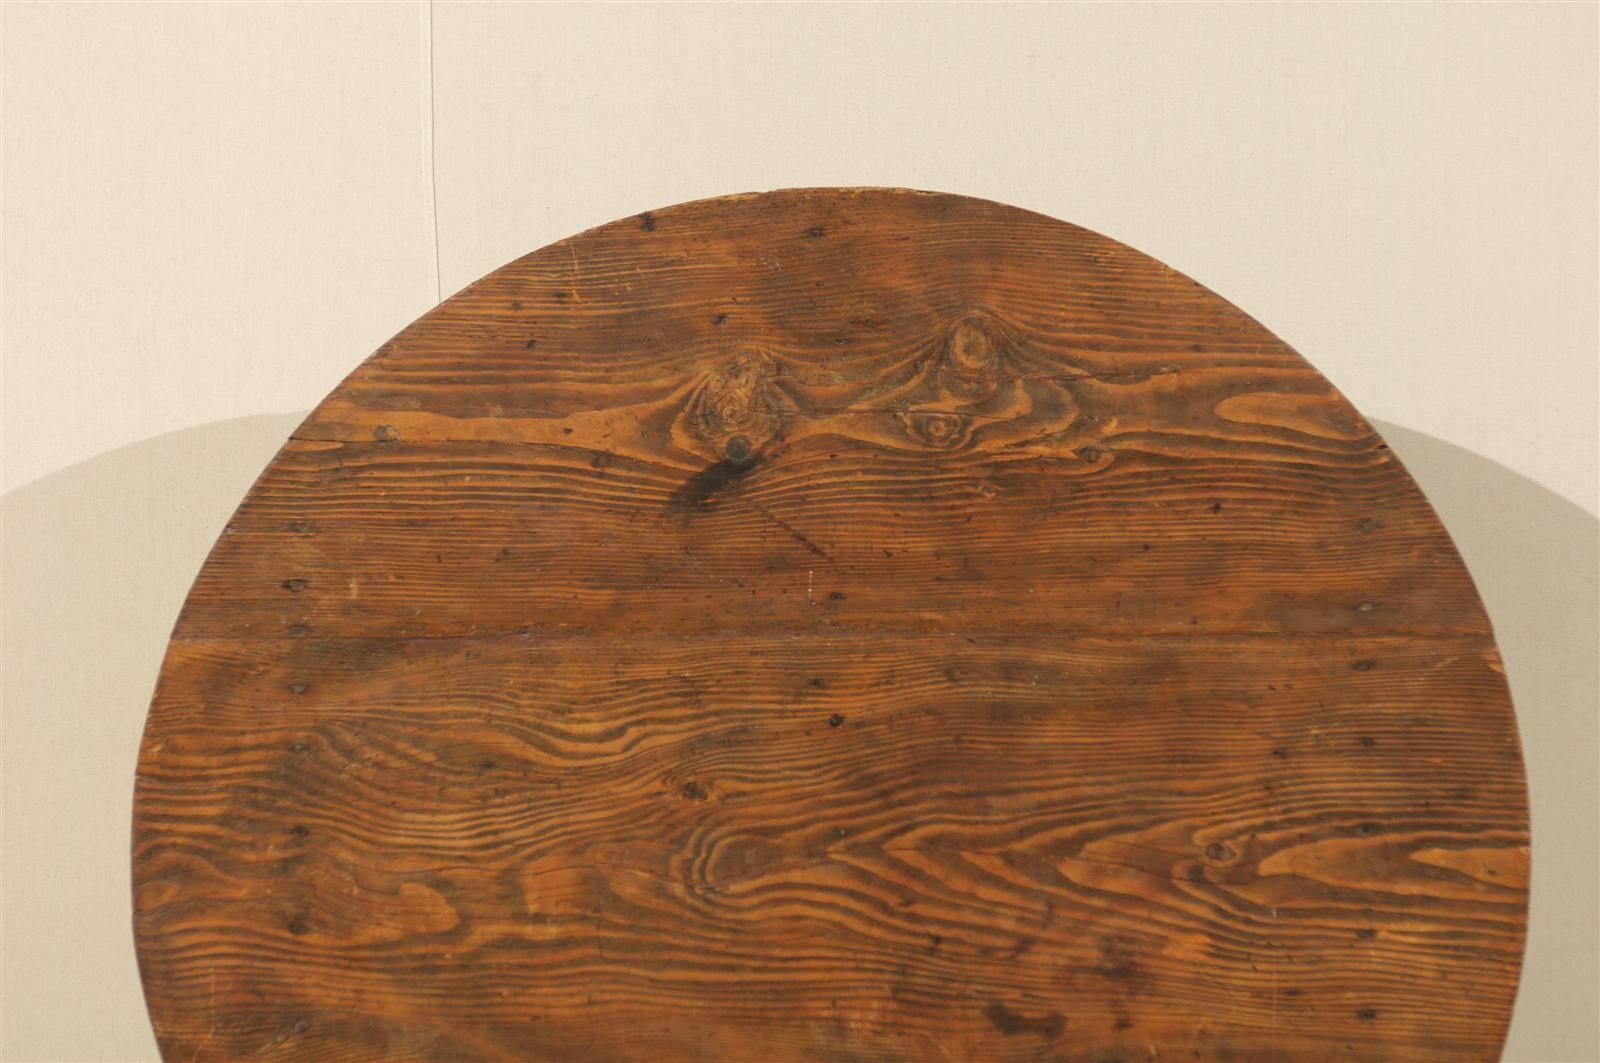 Eine französische Weinprobe Tisch von mittlerer Größe mit schönen Wood Grain und runde Form (Holz)